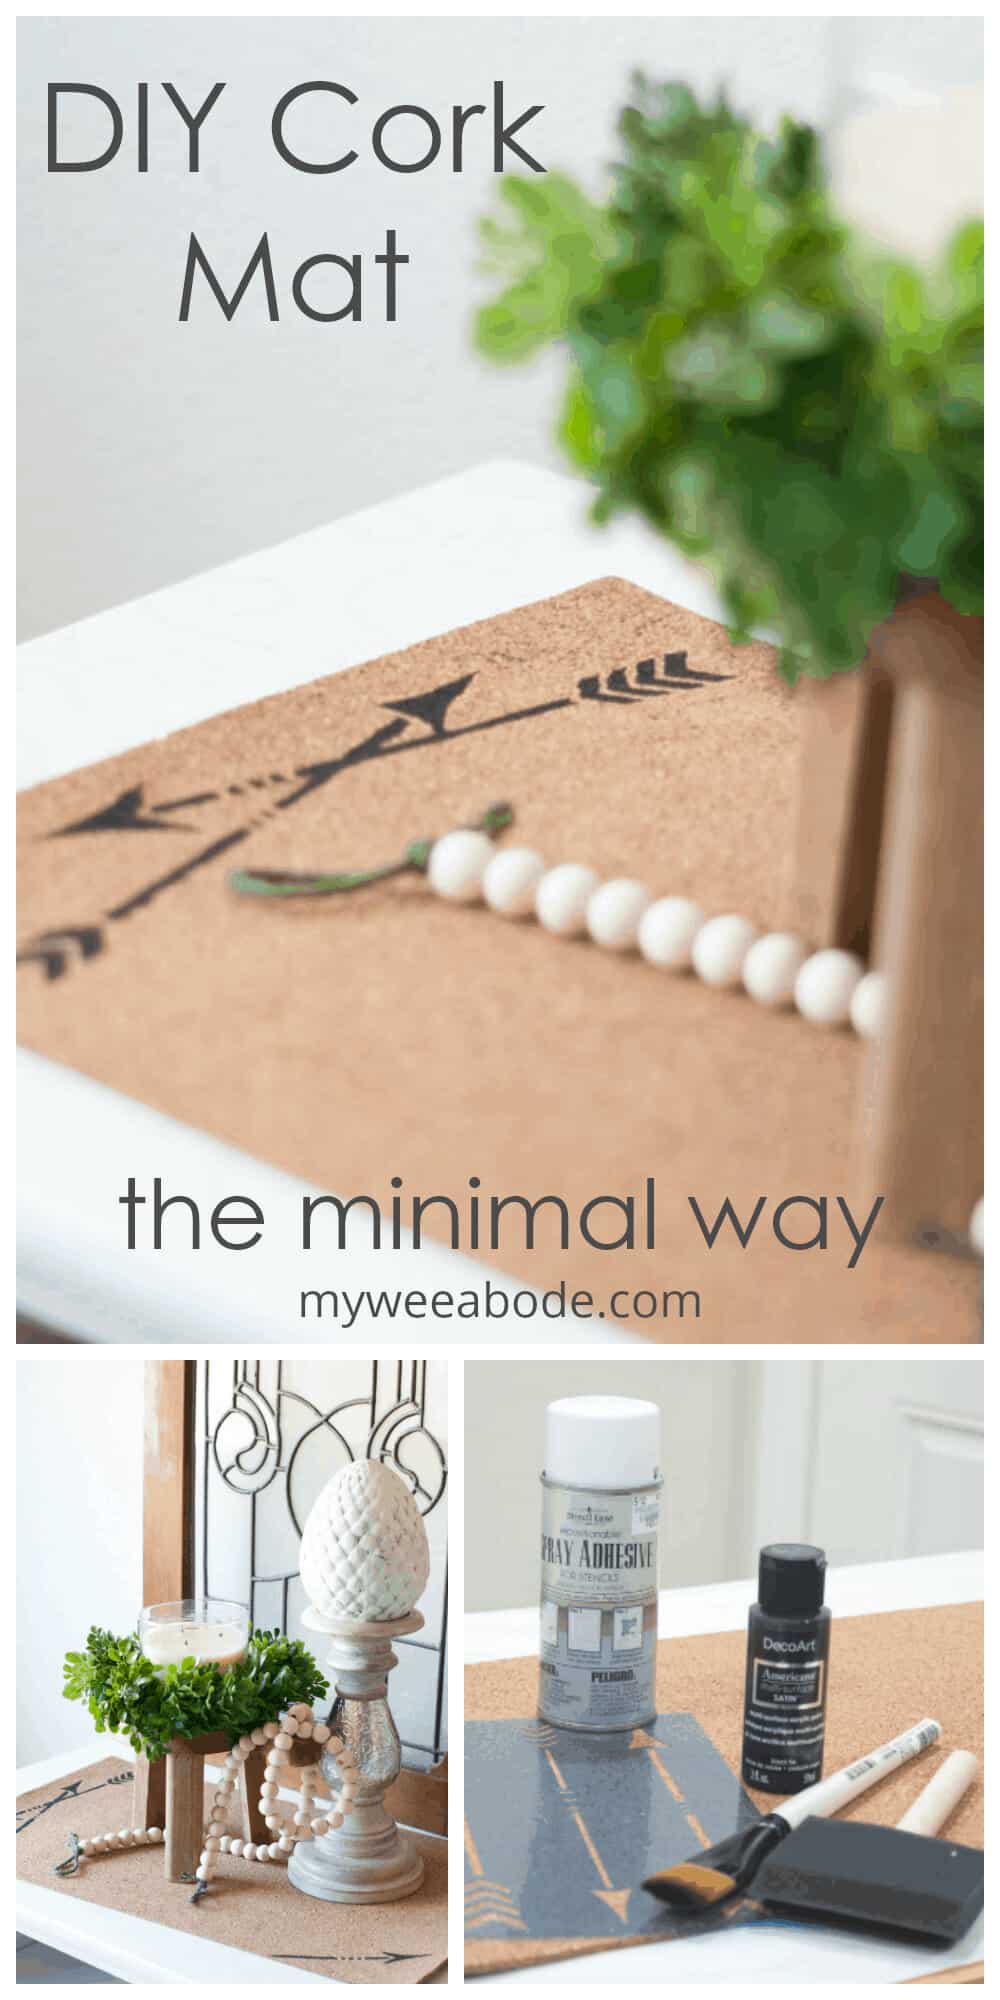 Diy cork mat the minimal way.